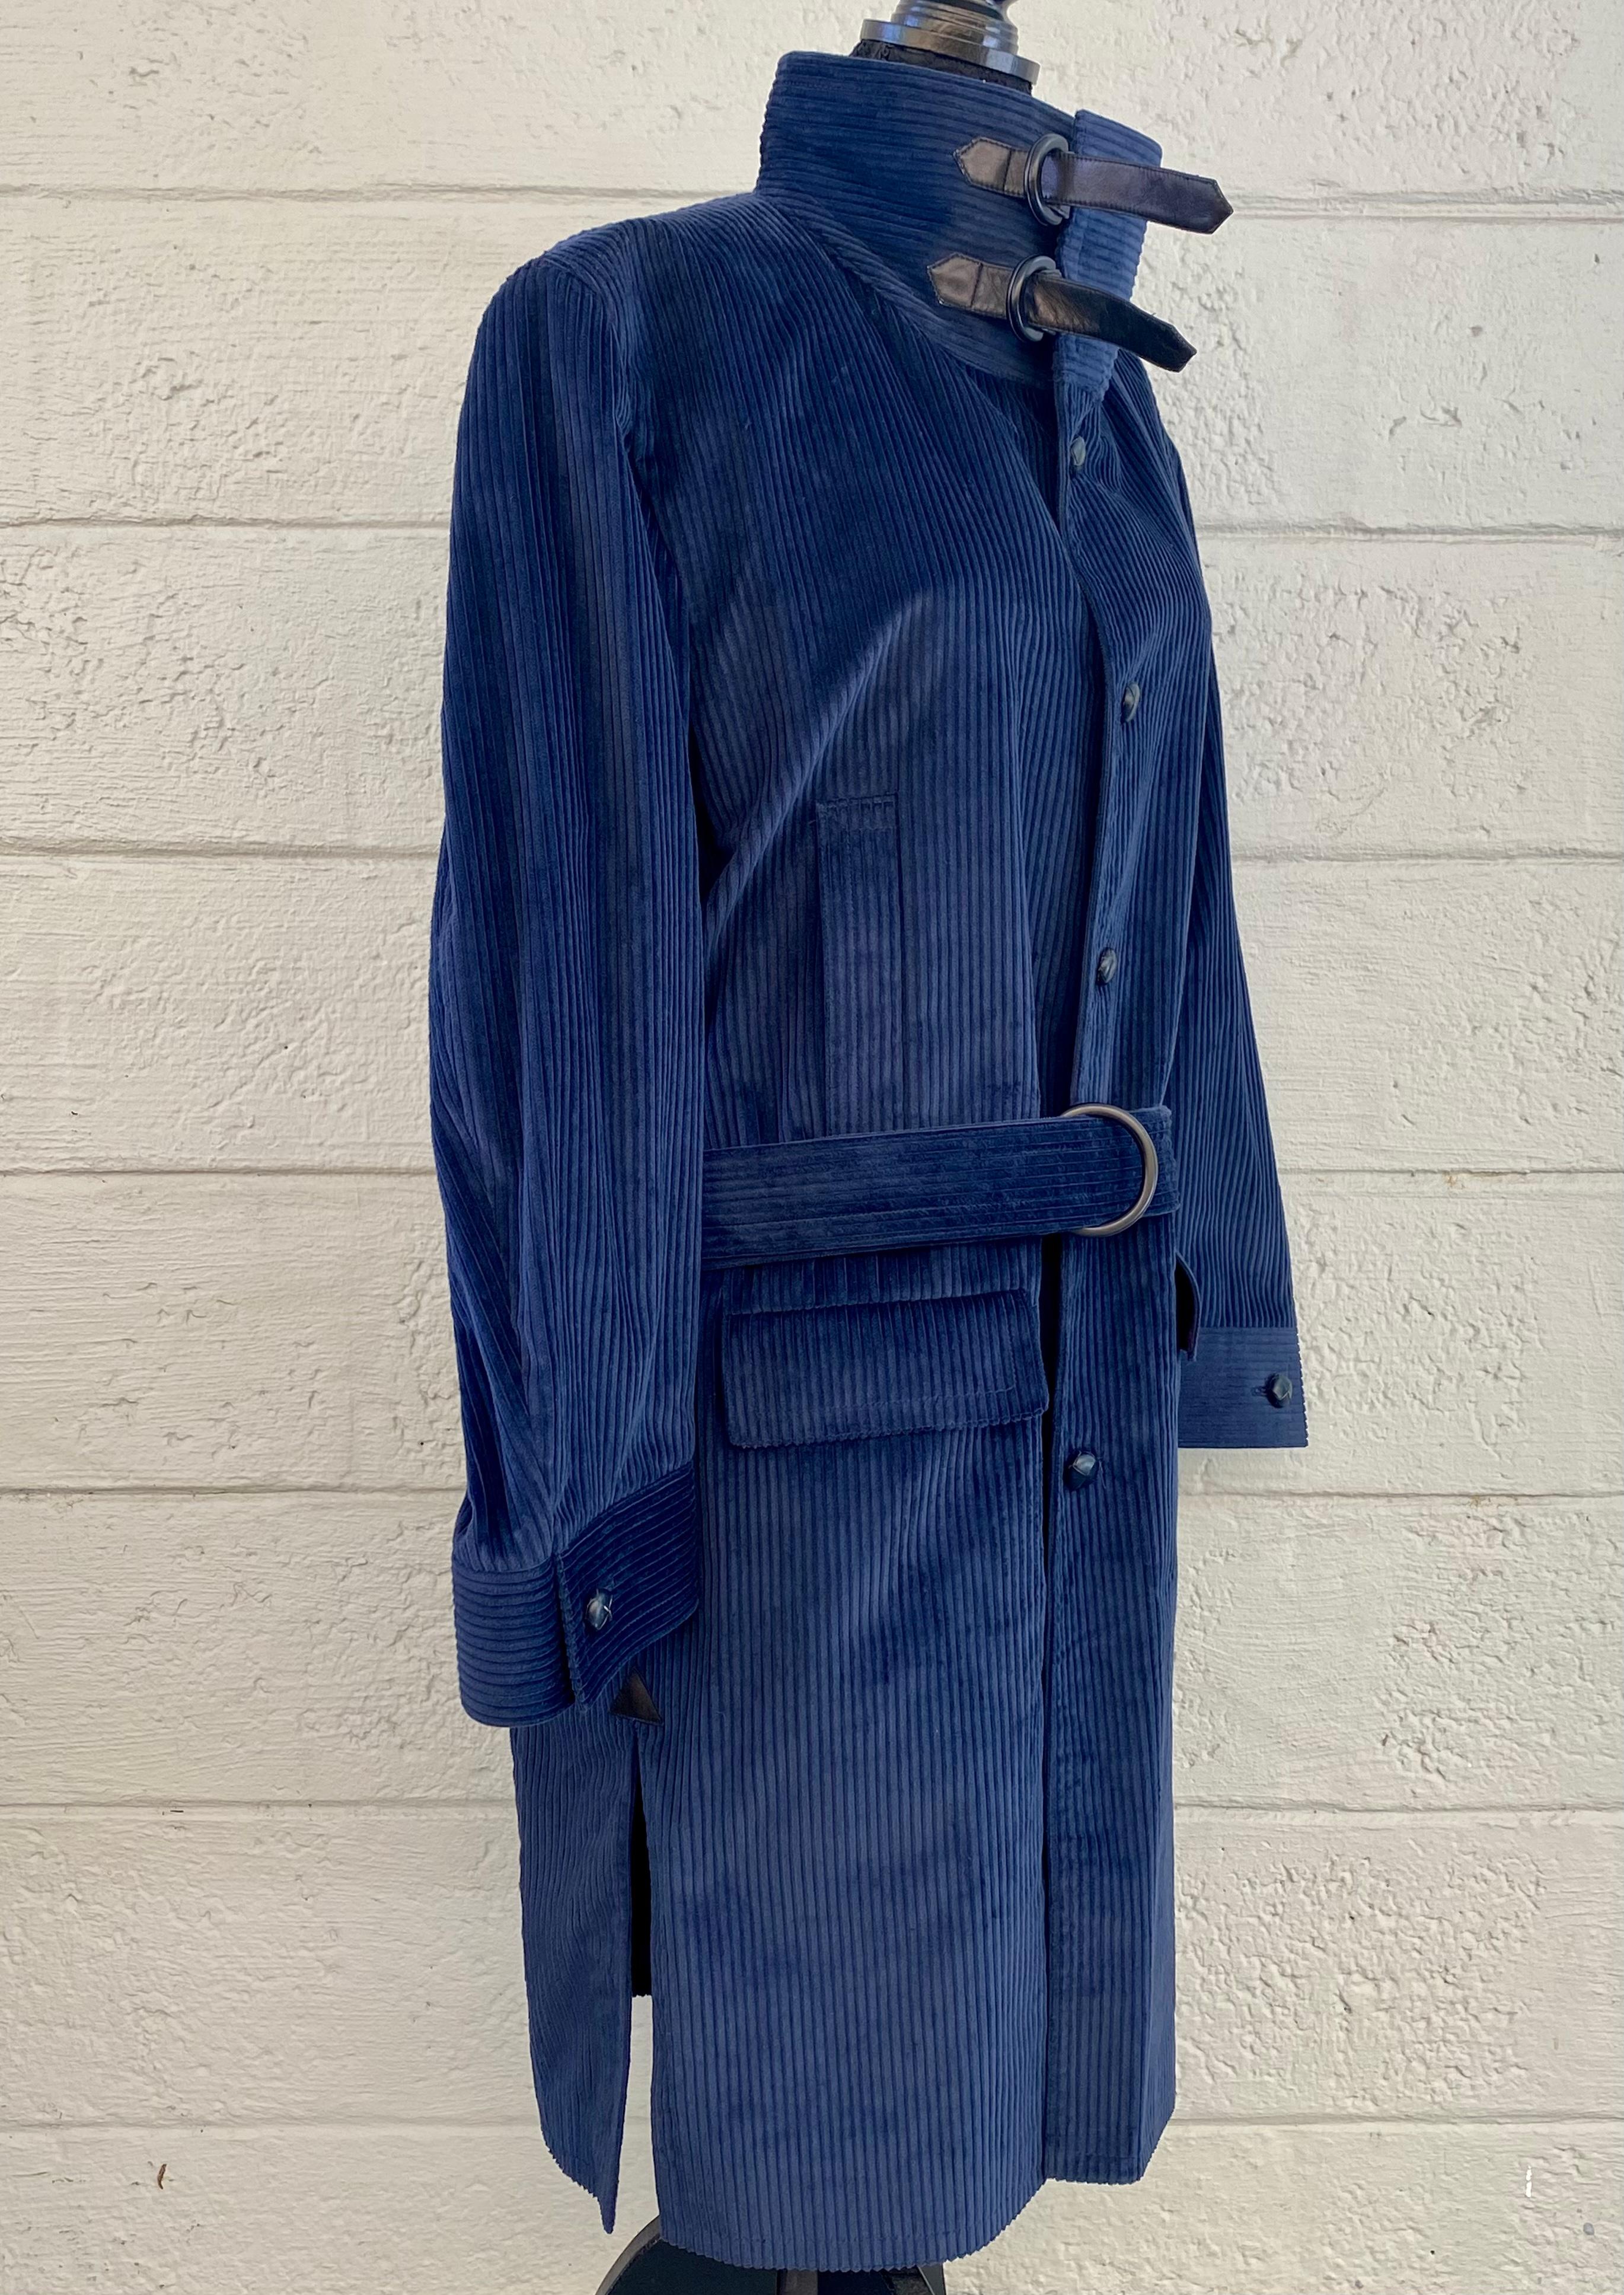 Magnifique trench-coat classique Pierre Cardin Boutique, datant de 1980. Fabriqué en France. Le velours côtelé bleu marine présente le traditionnel rabat-tempête, la taille à nouer et une grande fente dans le dos. Cela contraste avec les styles